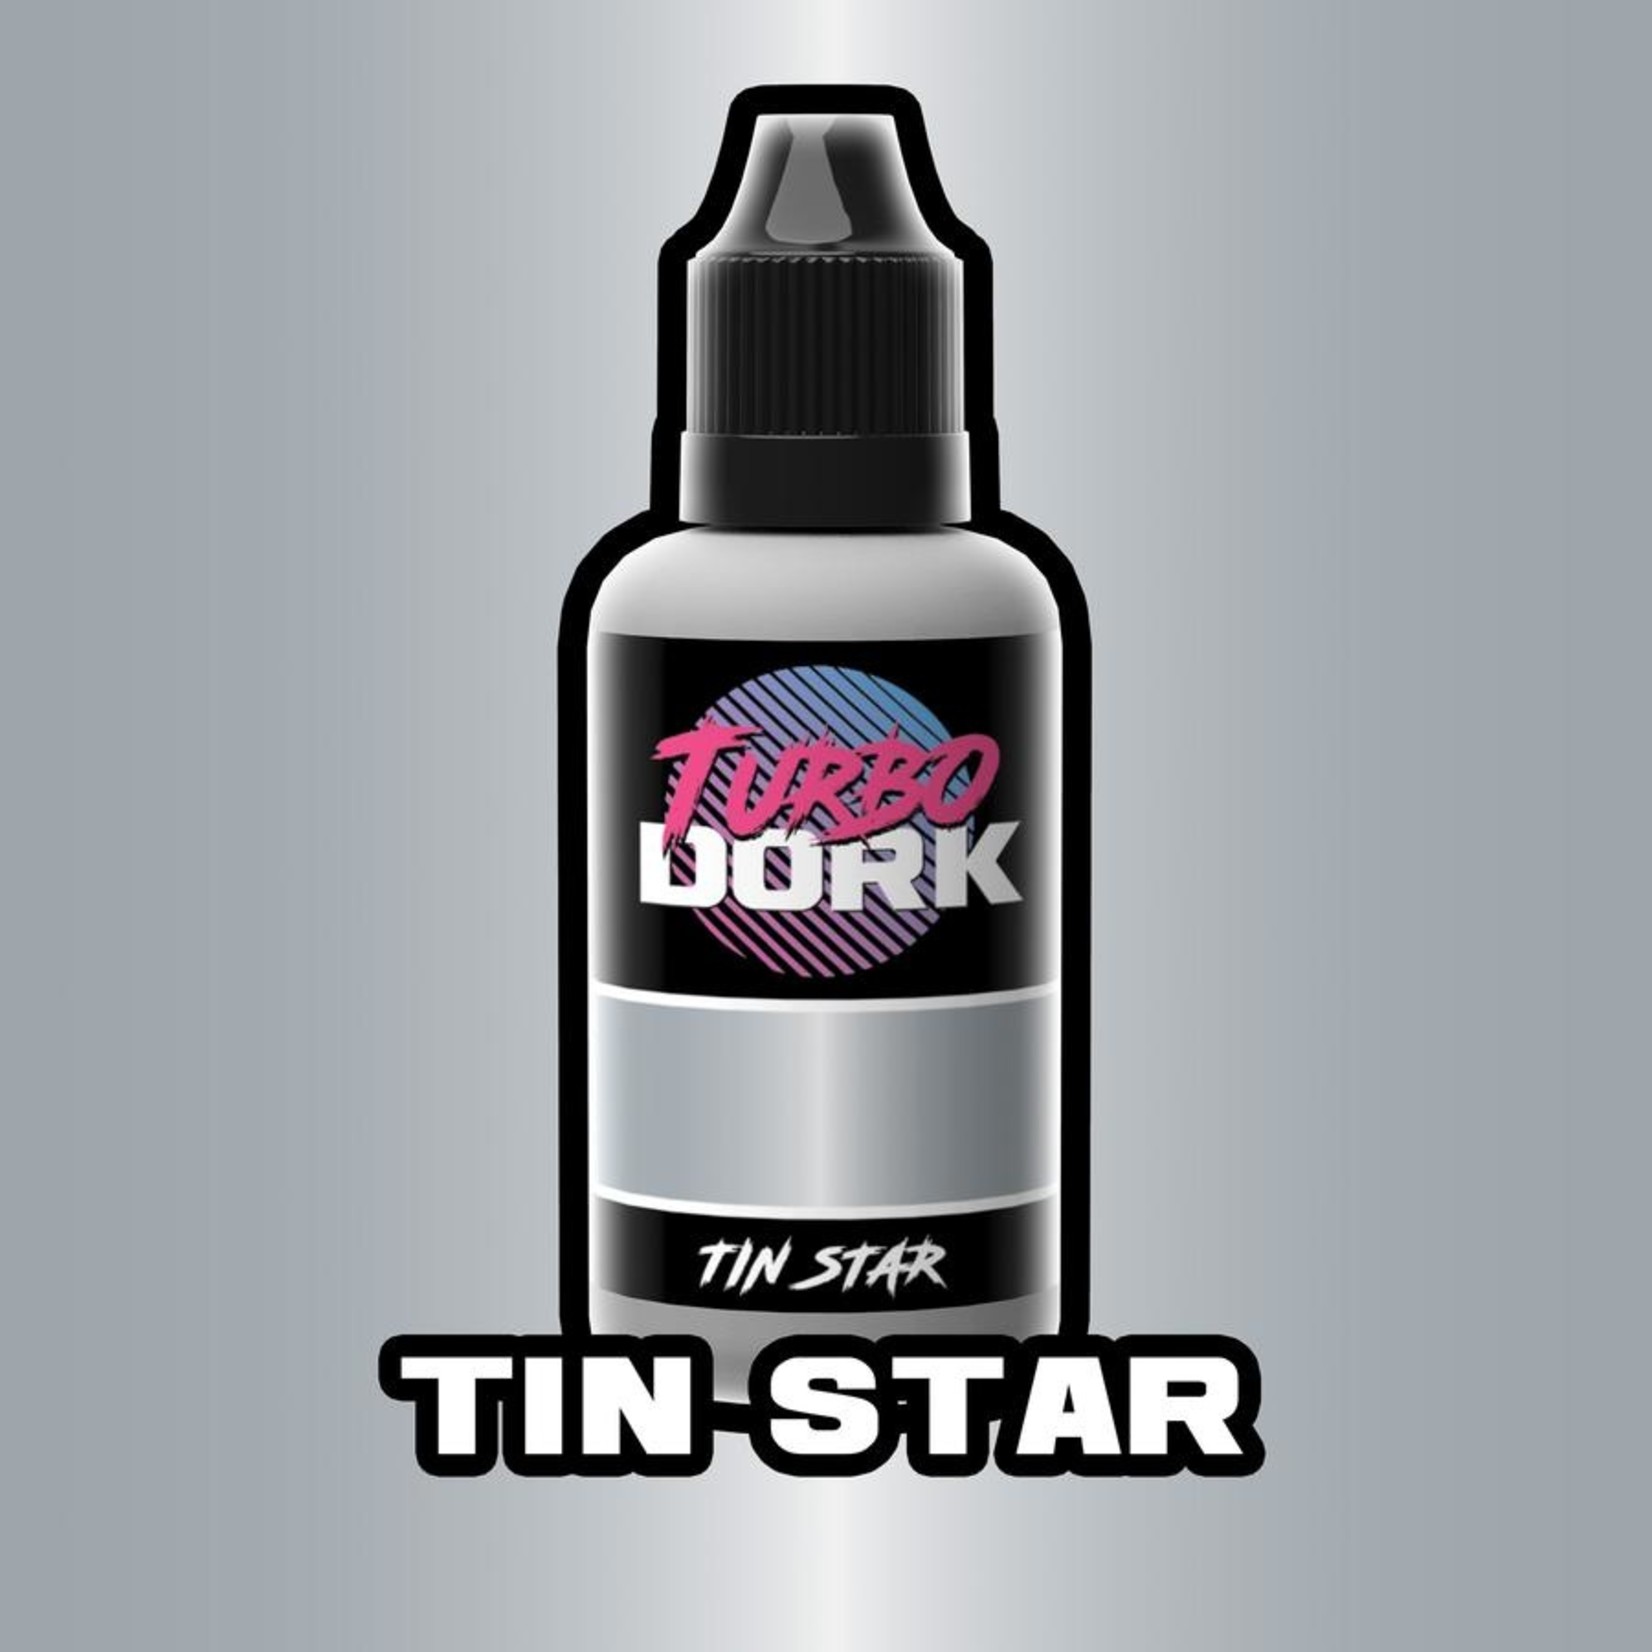 Turbodork Tin Star Metallic Acrylic Paint 20ml Bottle